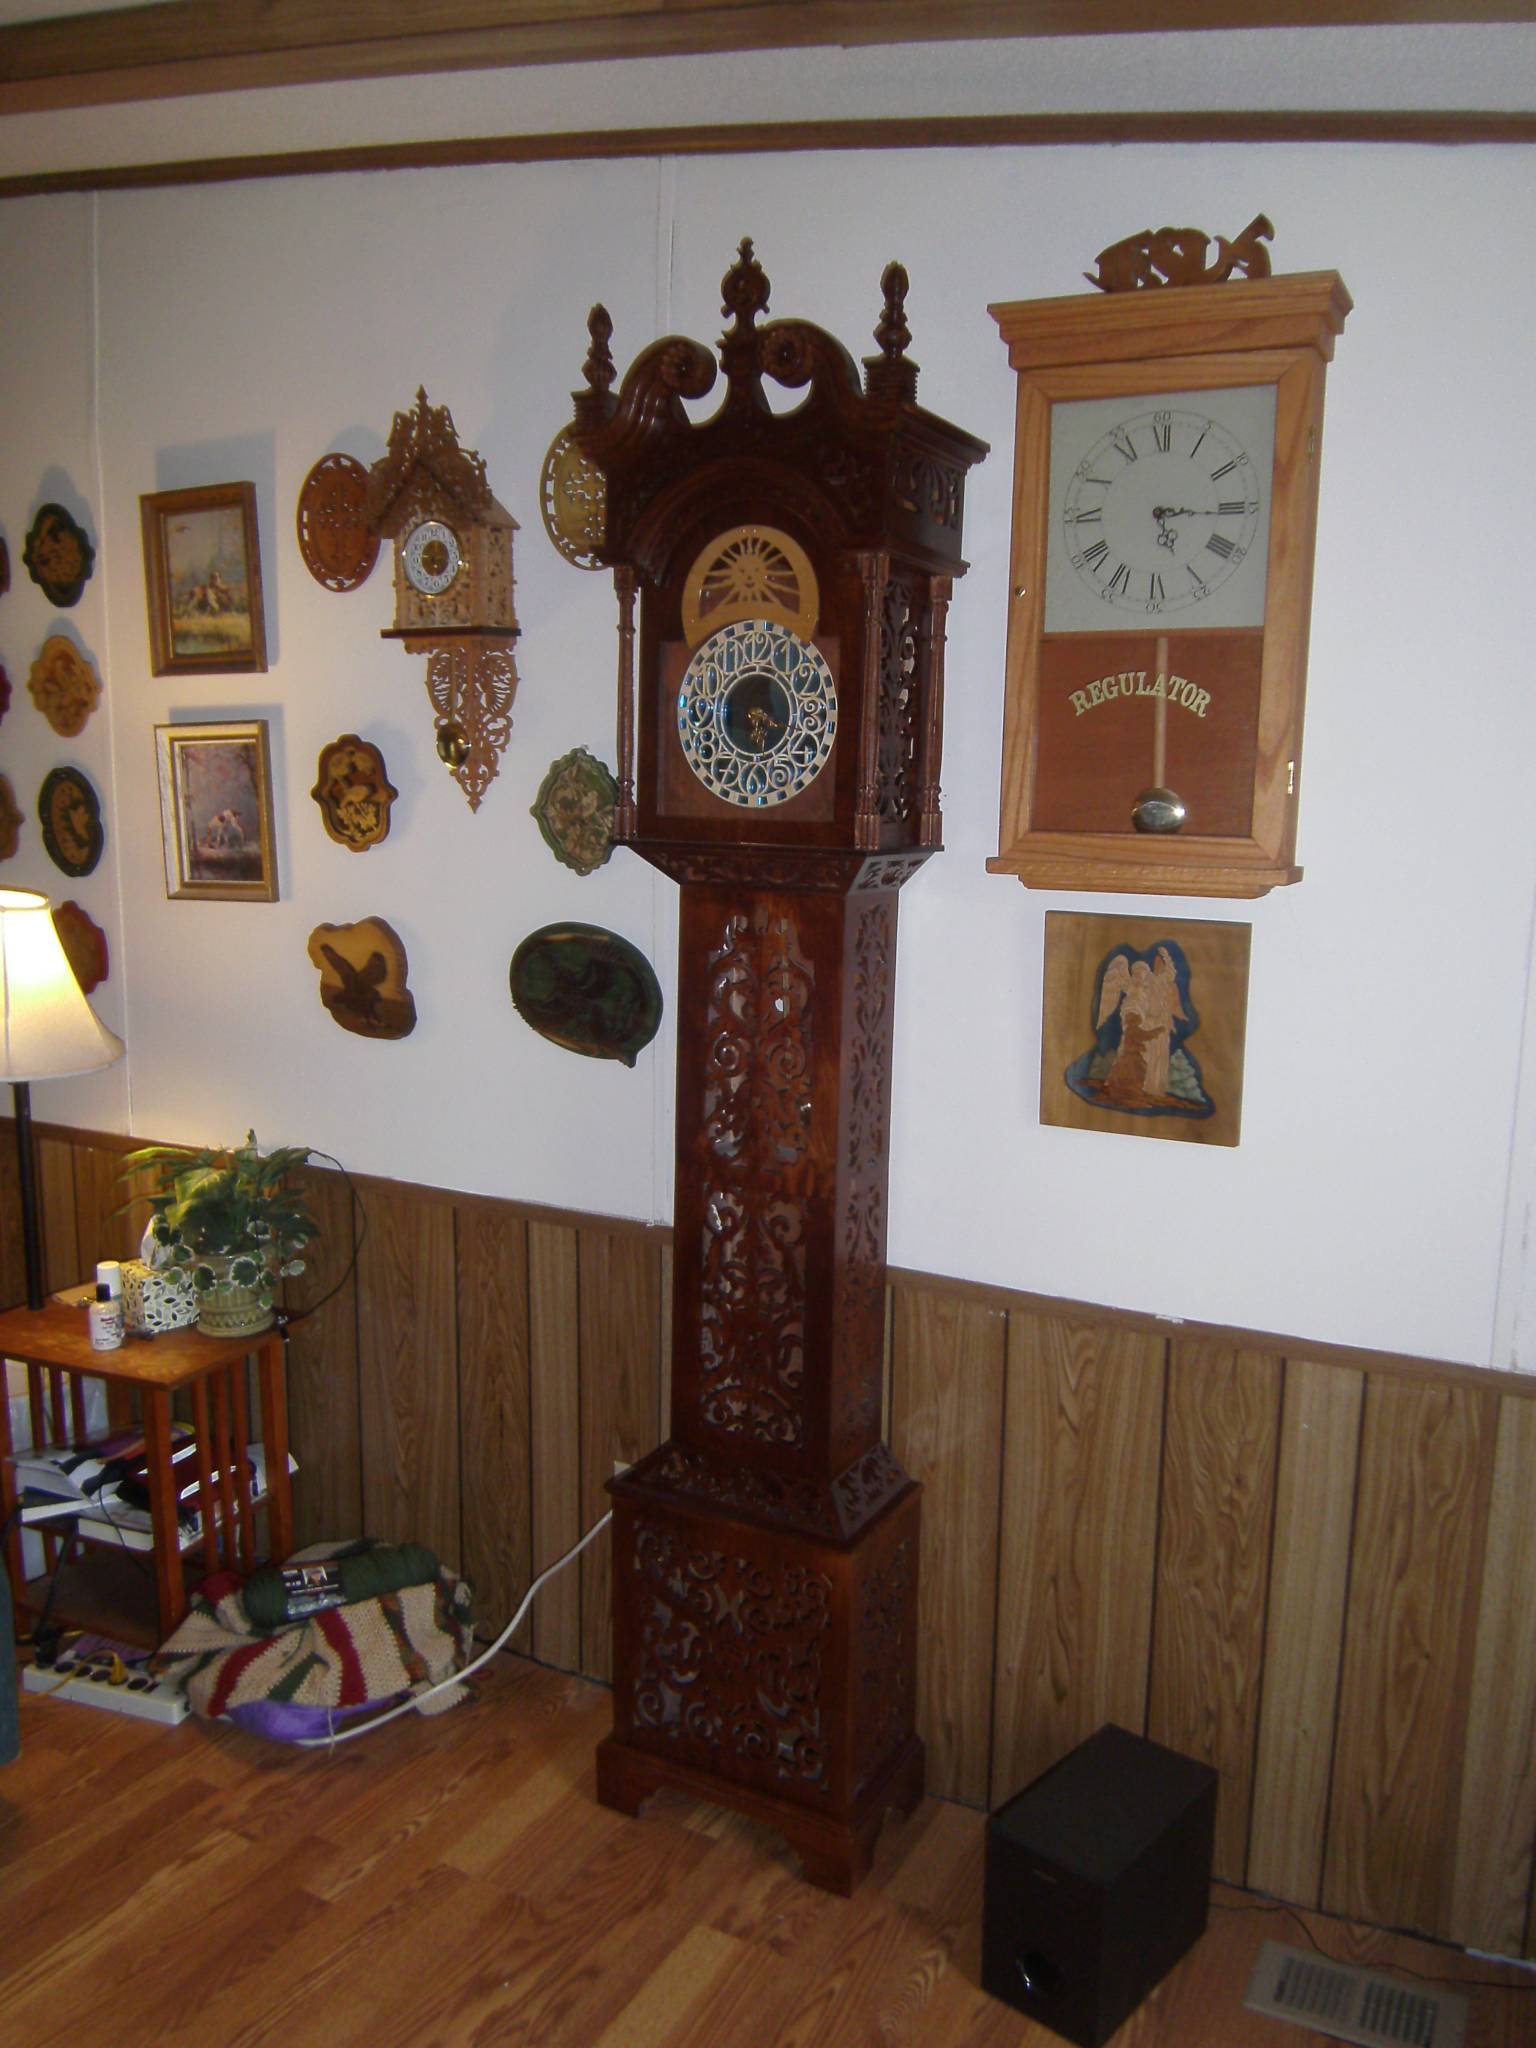 Grandfather Clocks